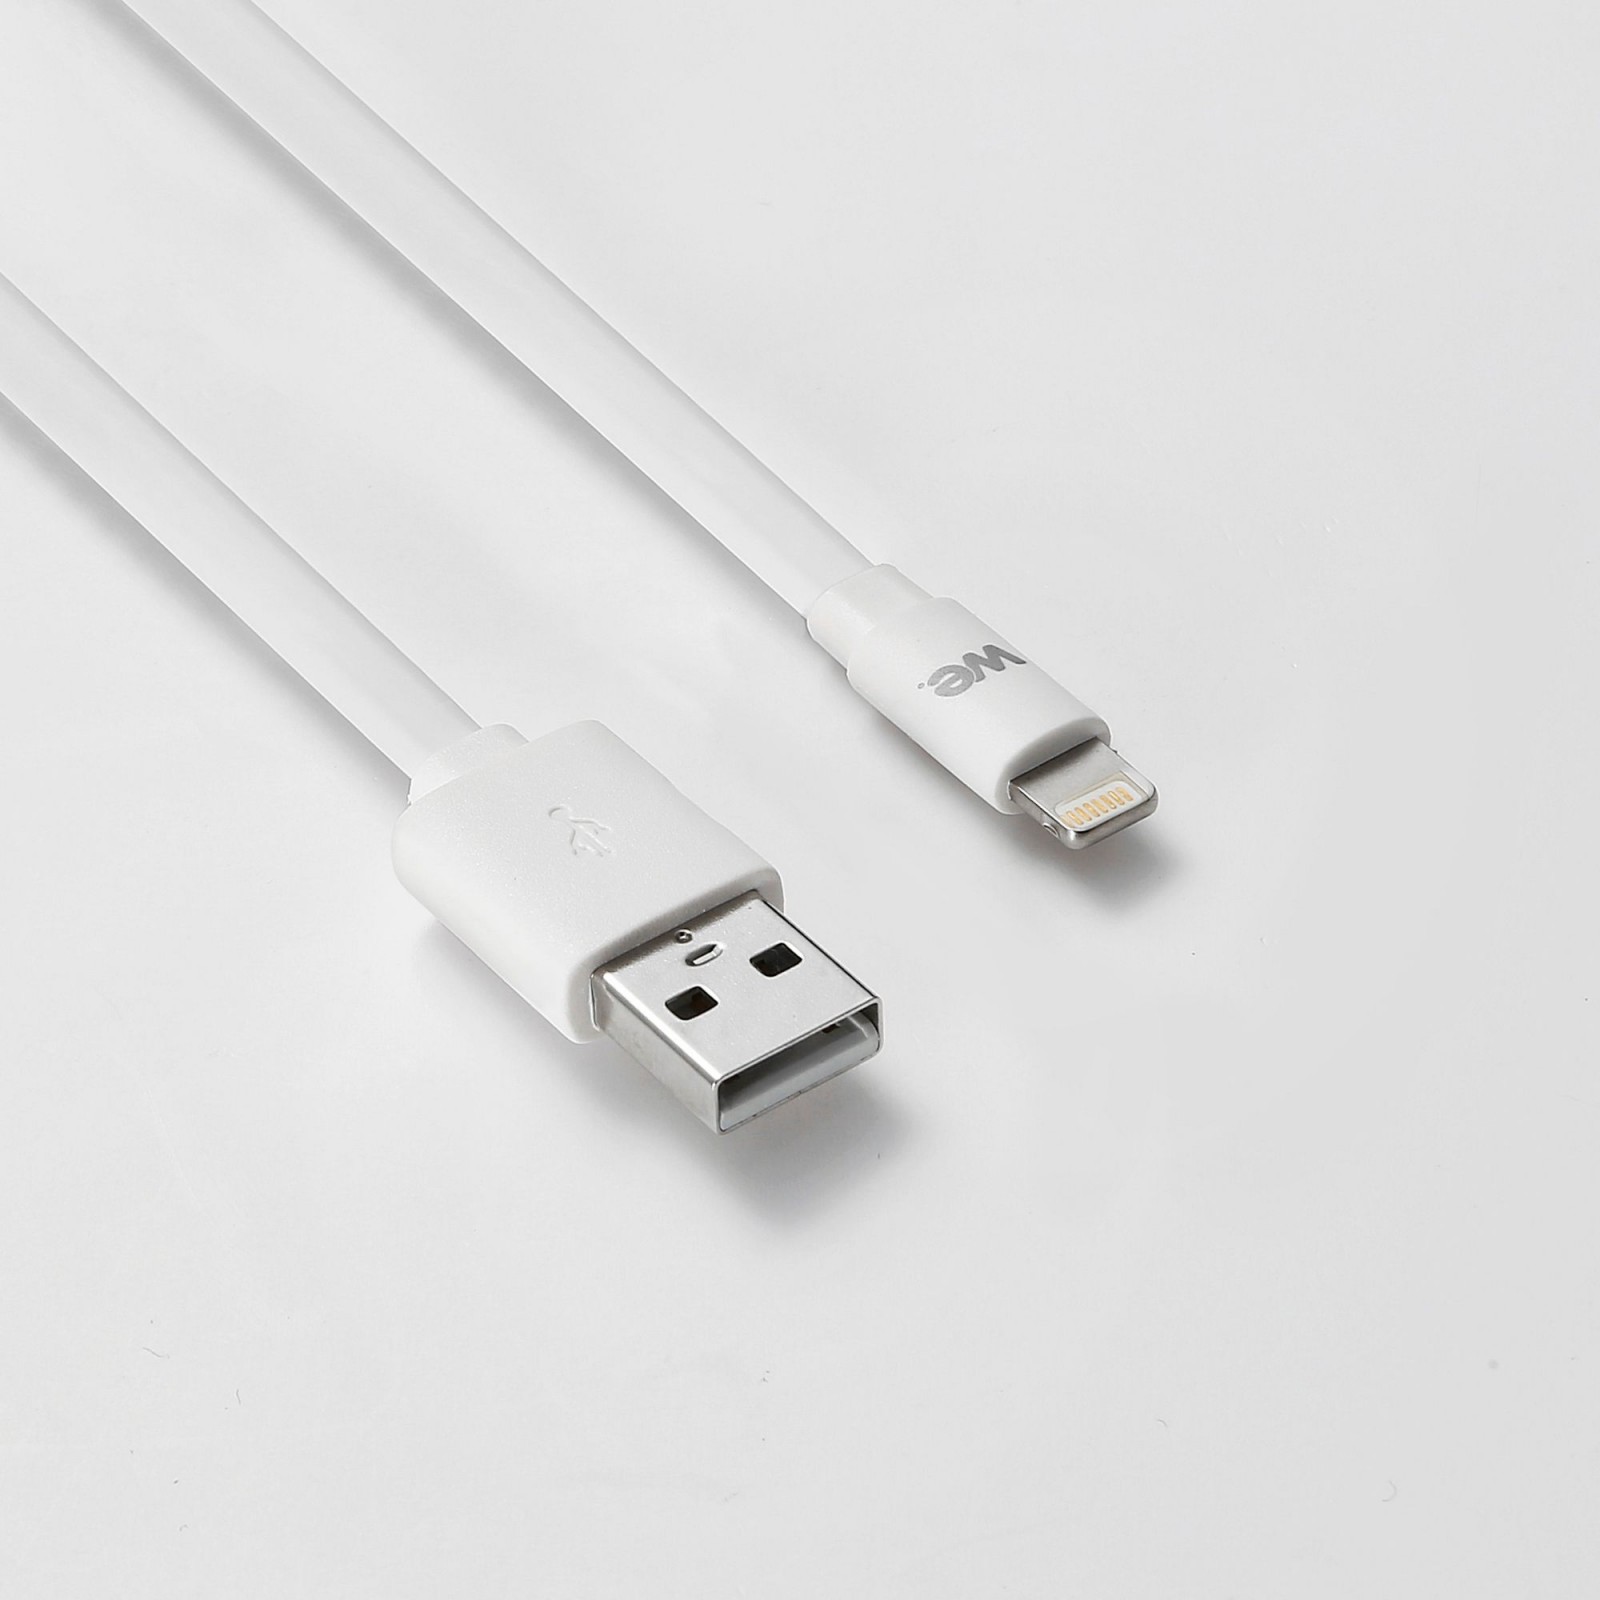 Câble Apple USB/lightning plat: évite de faire des noeuds 1m blanc